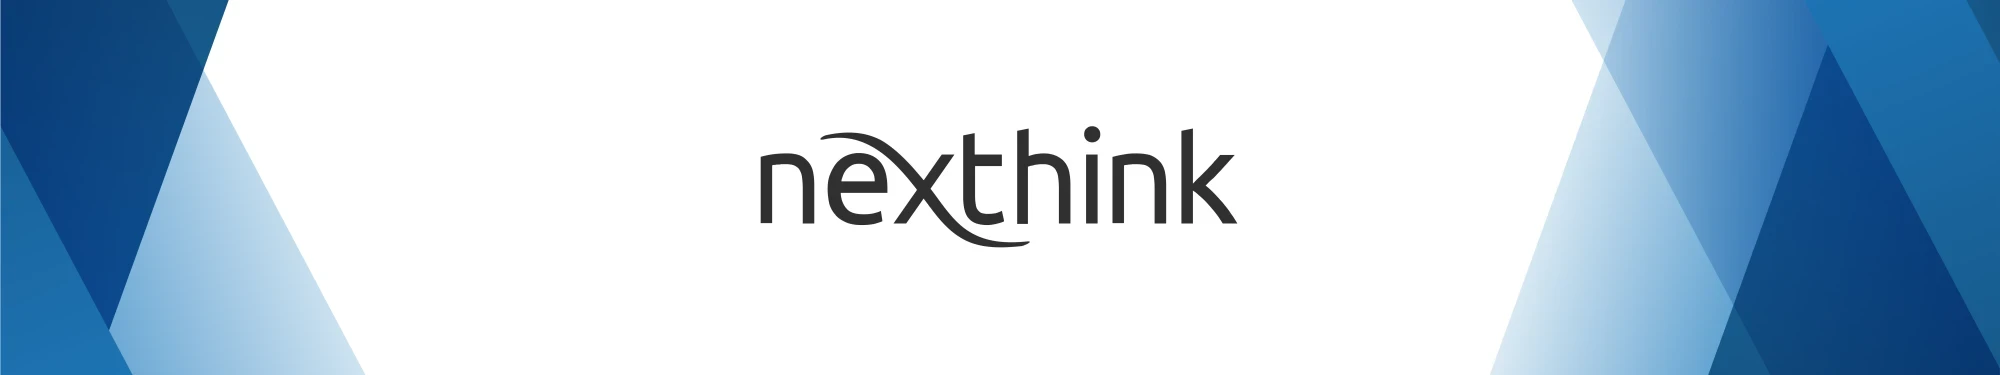 Partnerheader Nexthink | SPIRIT/21